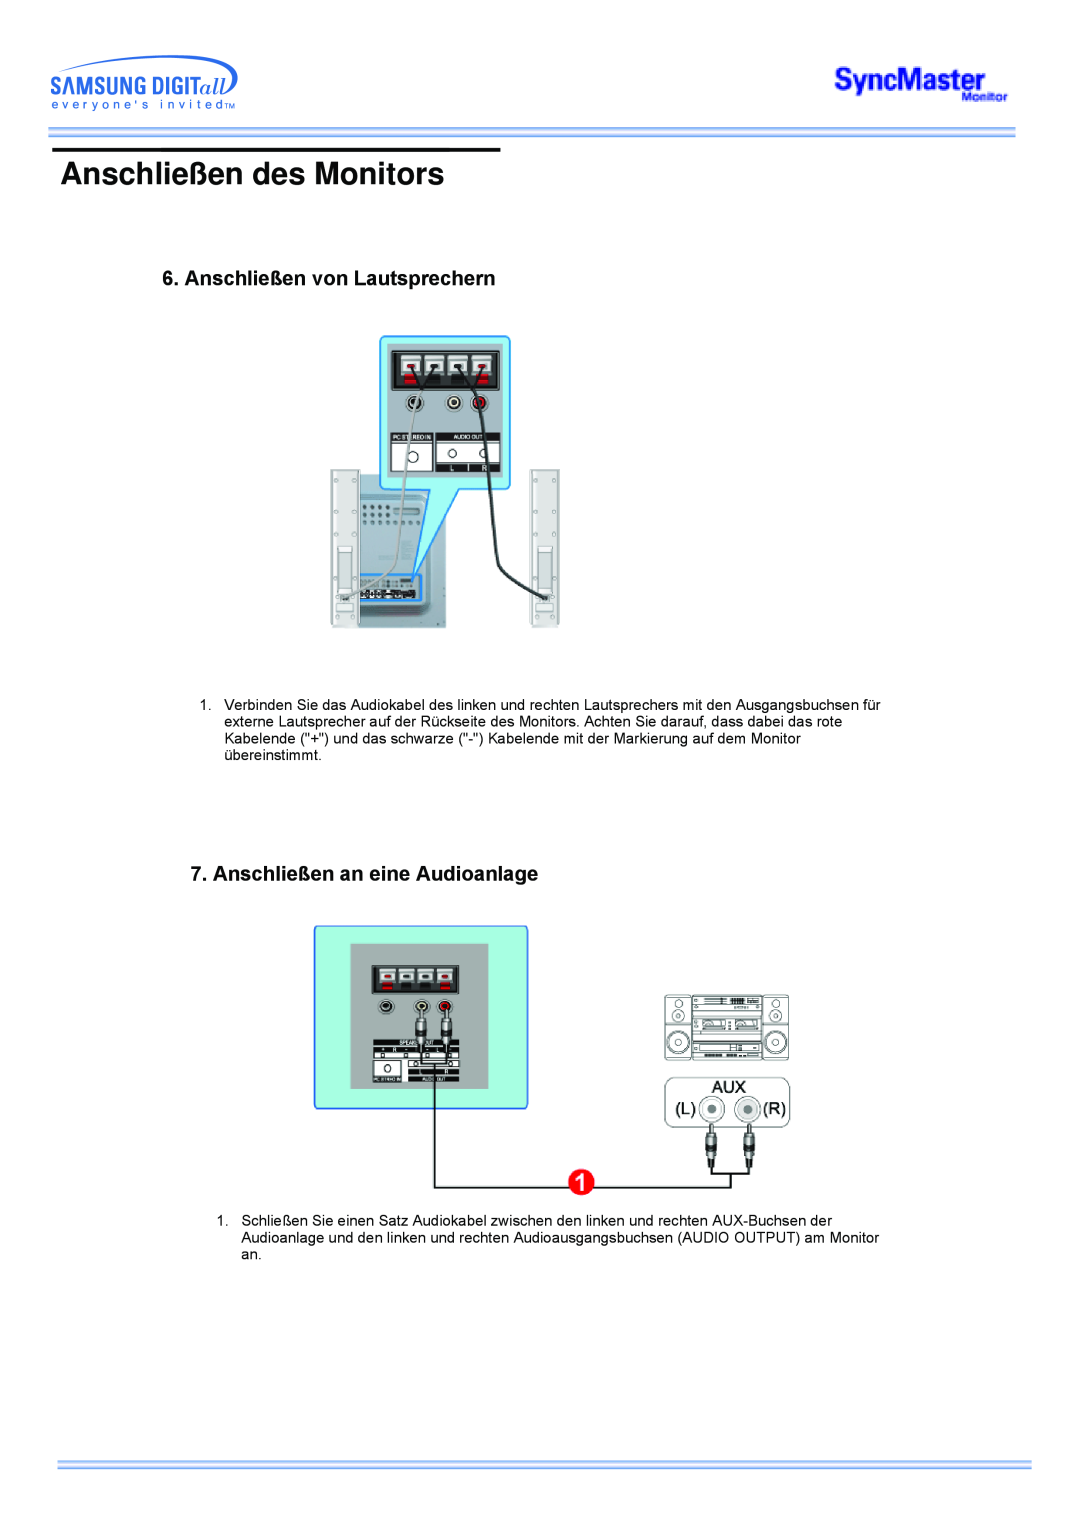 Samsung CK40BSNS/EDC manual Anschließen von Lautsprechern, Anschließen an eine Audioanlage, Anschließen des Monitors 